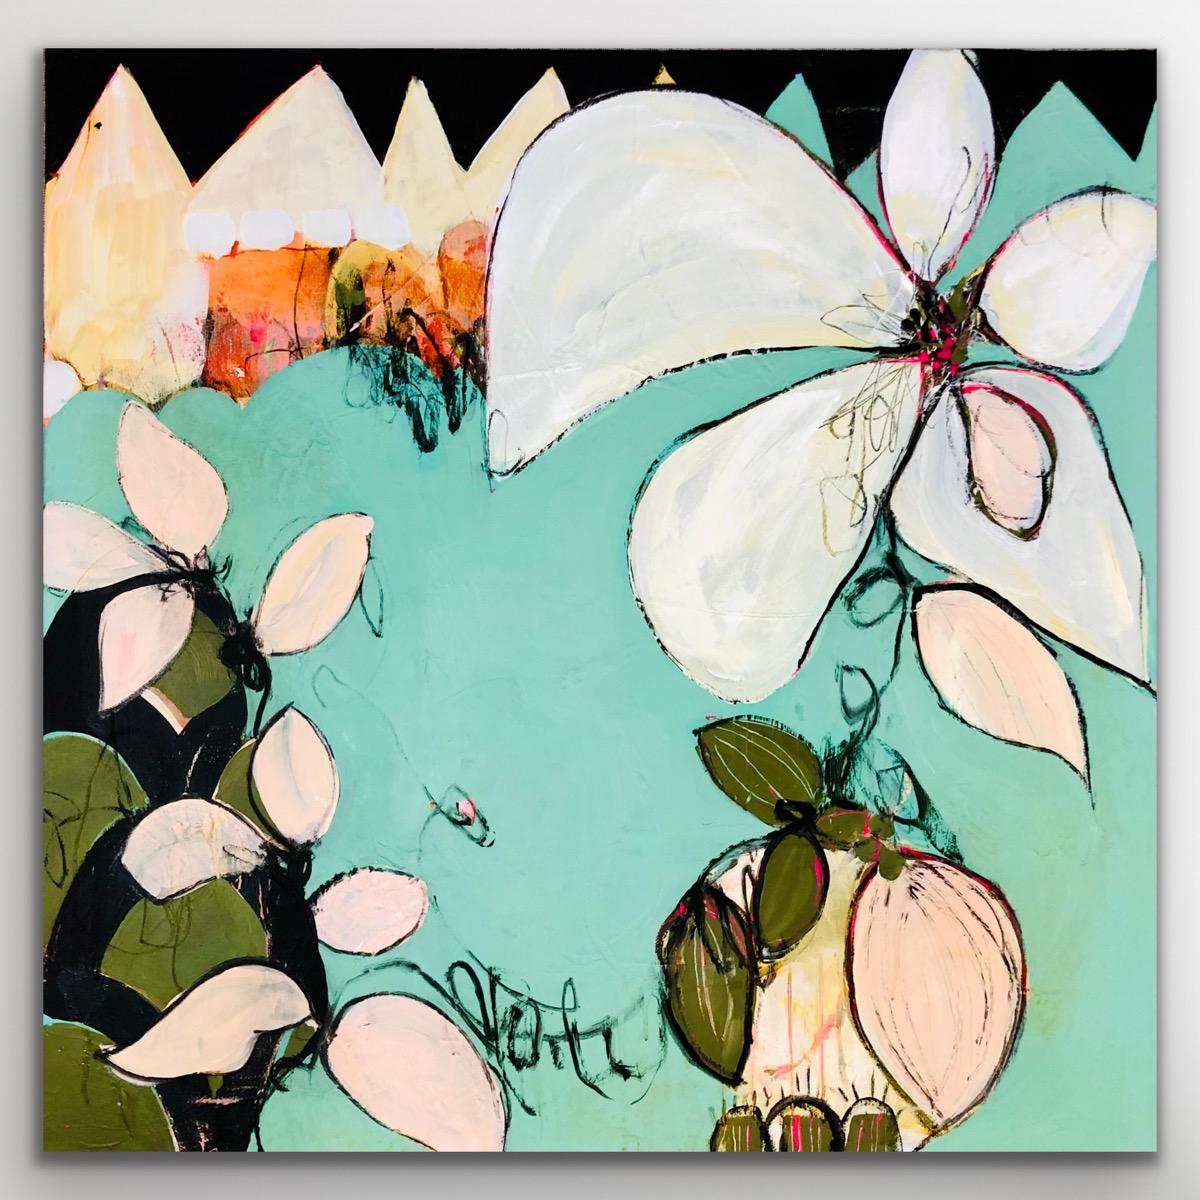 Peinture abstraite originale à l'acrylique sur toile - Fleur de vigne turquoise, bleu et orange - Gris Abstract Painting par Lynette Reed